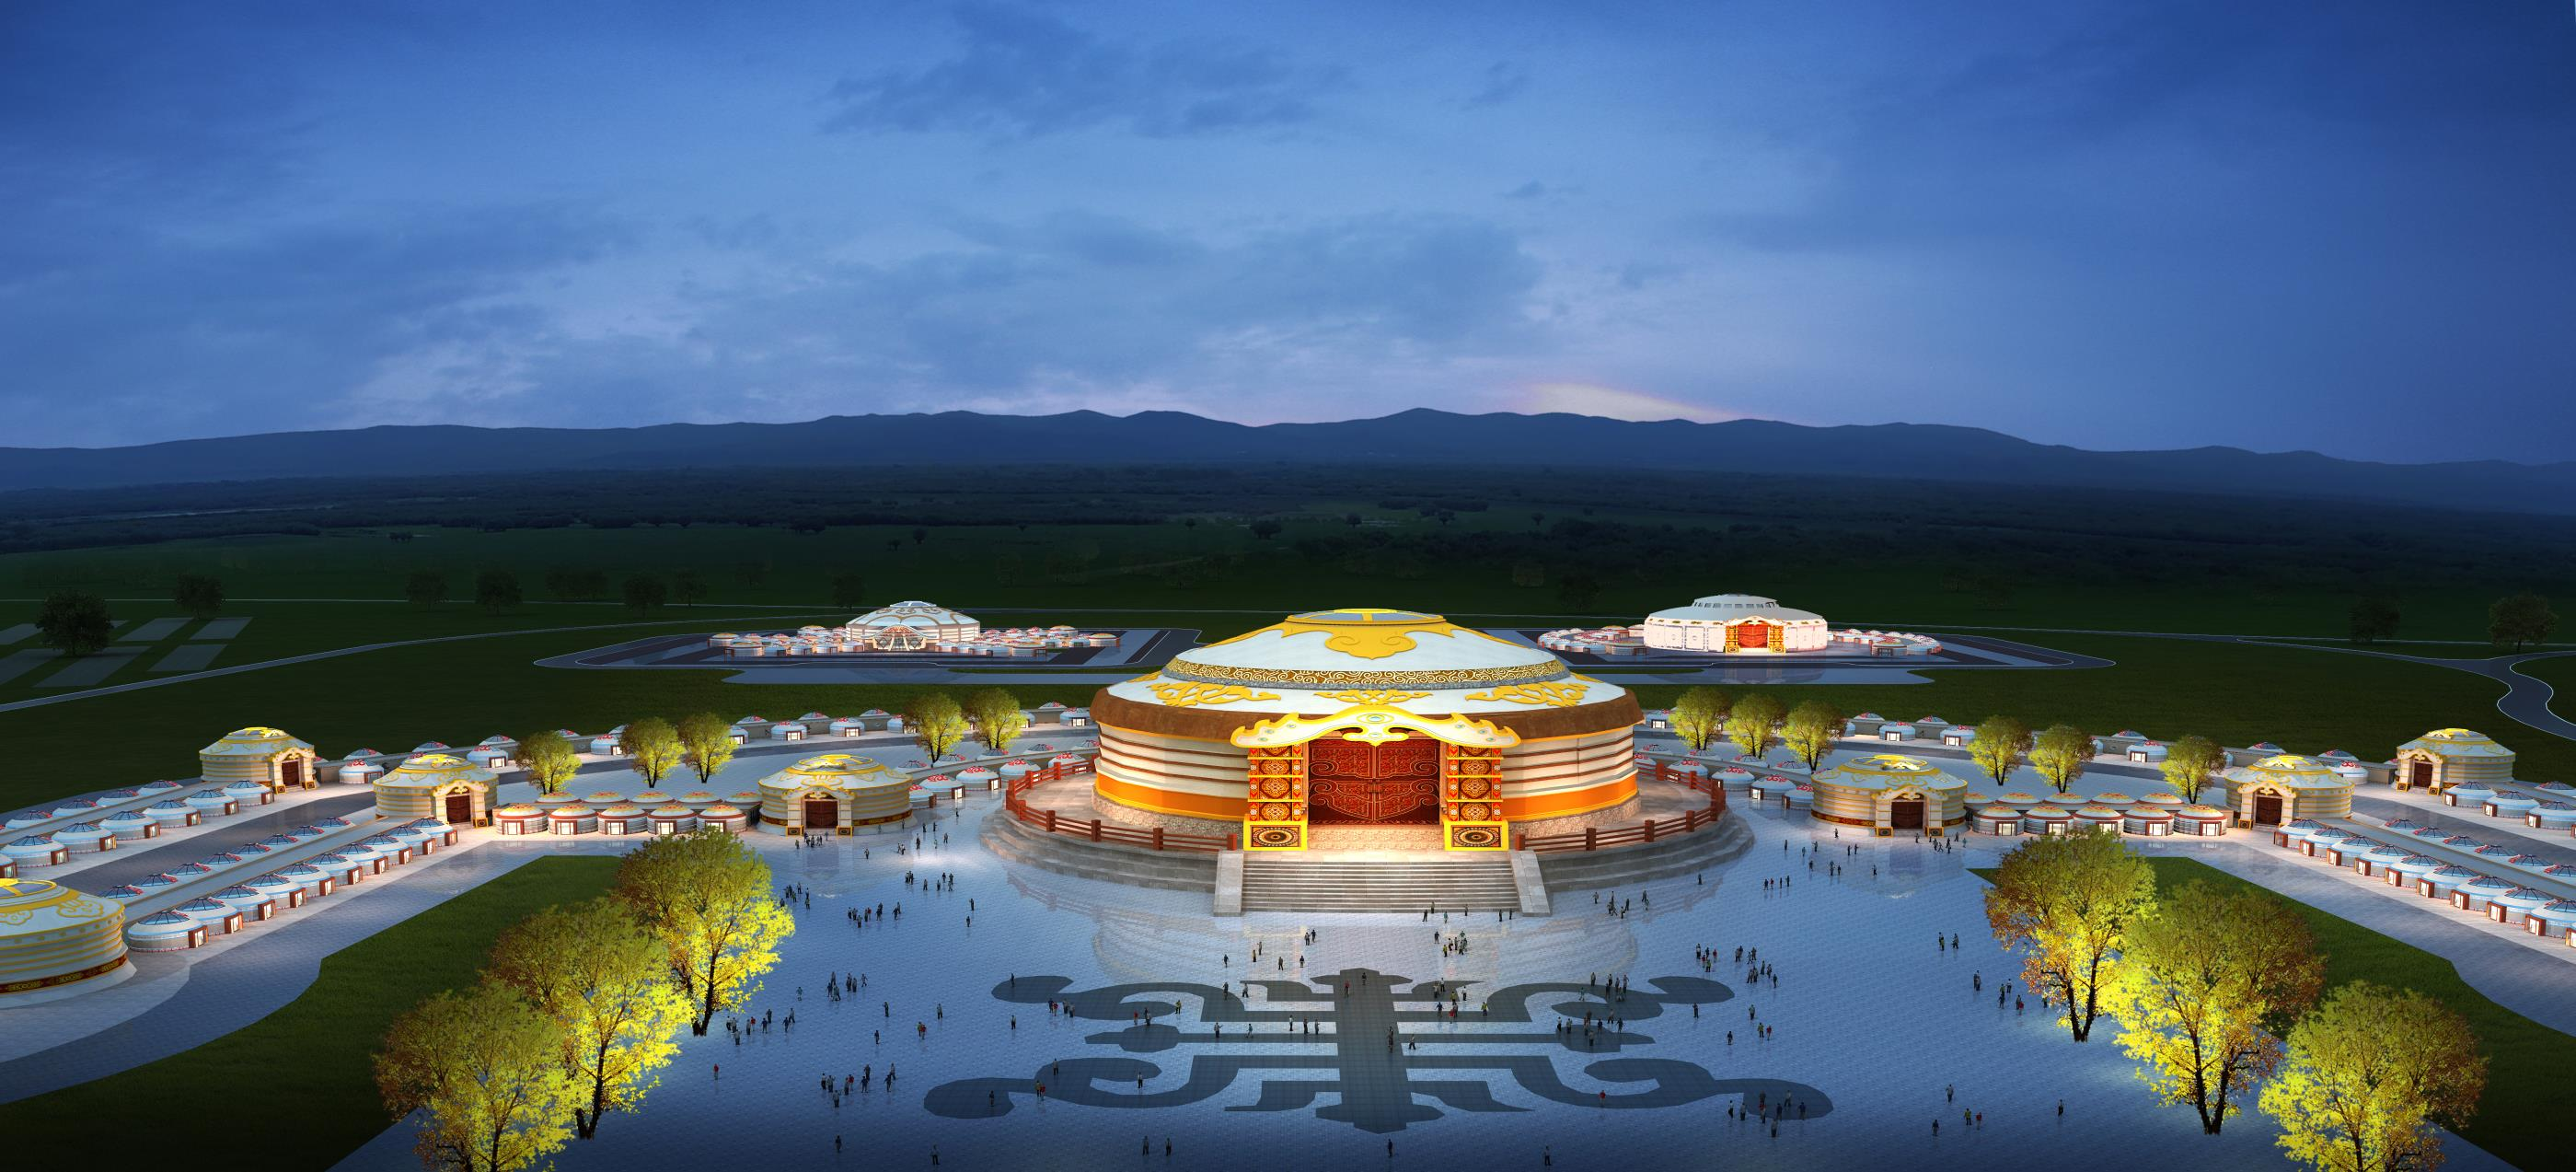 乌兰县旅游产业发展茶卡德都蒙古文化风情体验园建设项目